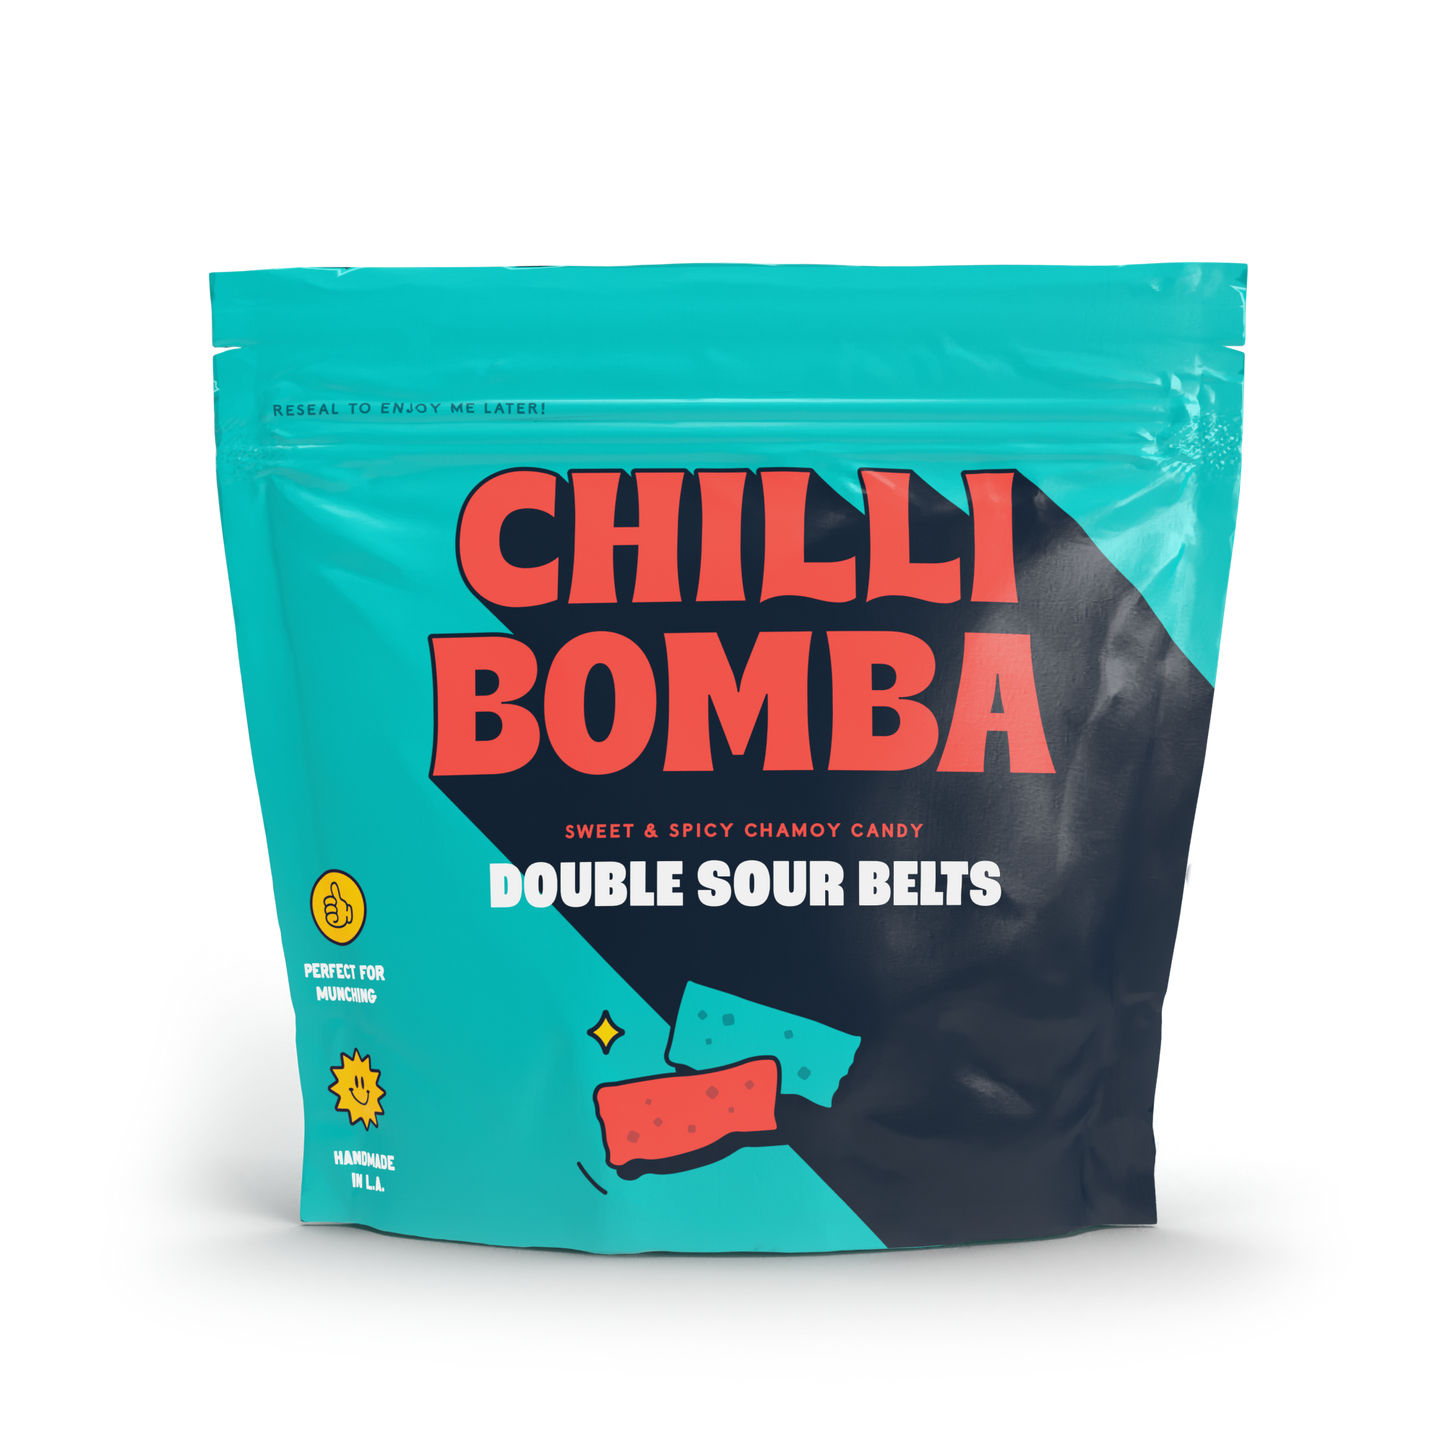 Chilli Bomba Double Sour Belts 8oz